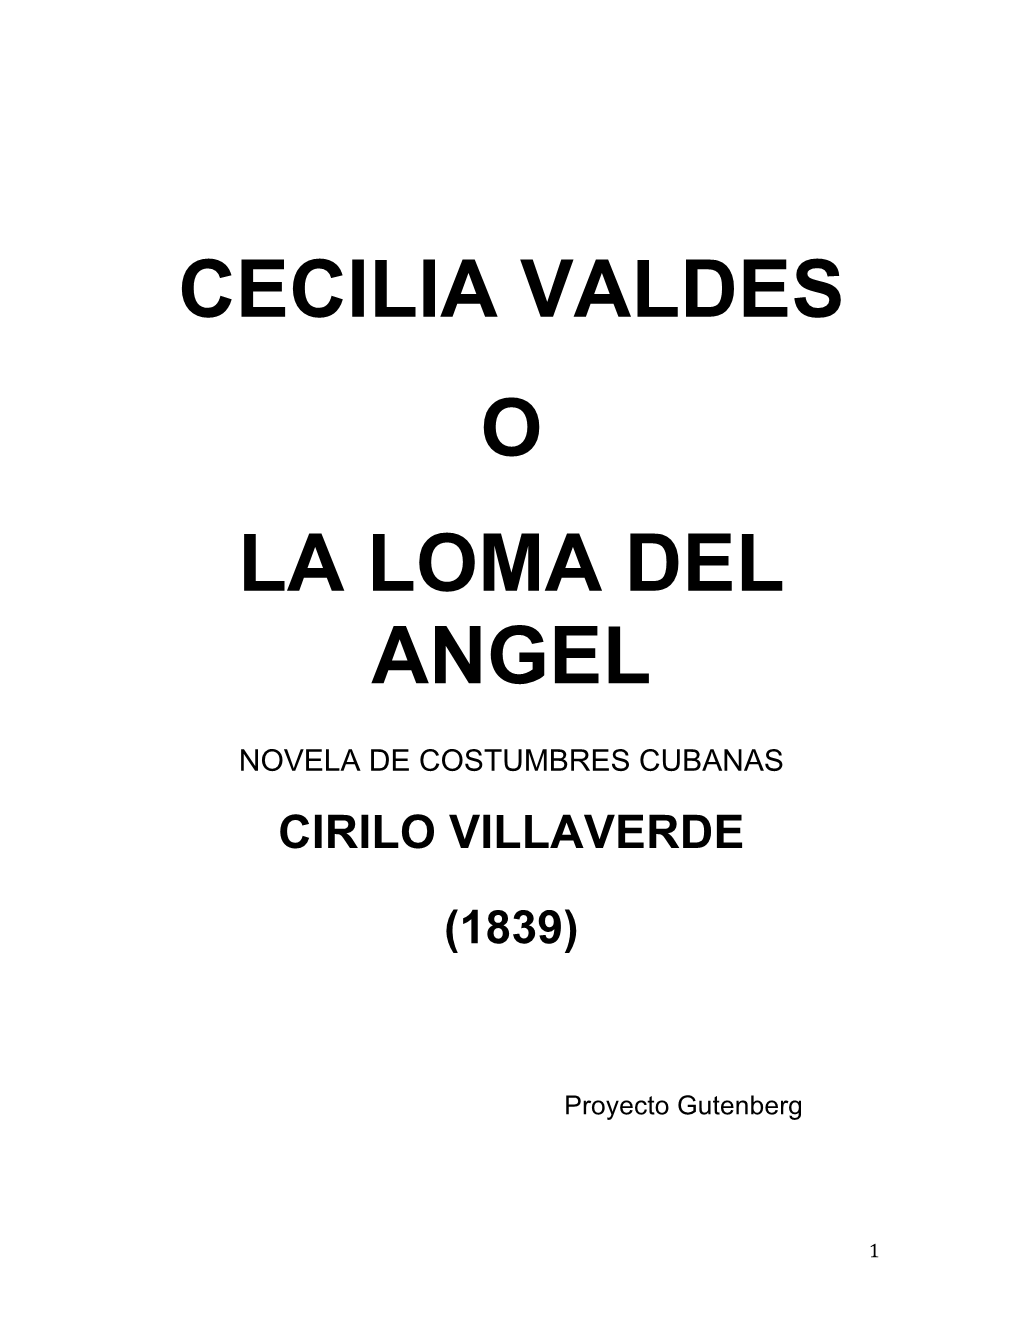 Villaverde, Cirilo, CECILIA VALDES